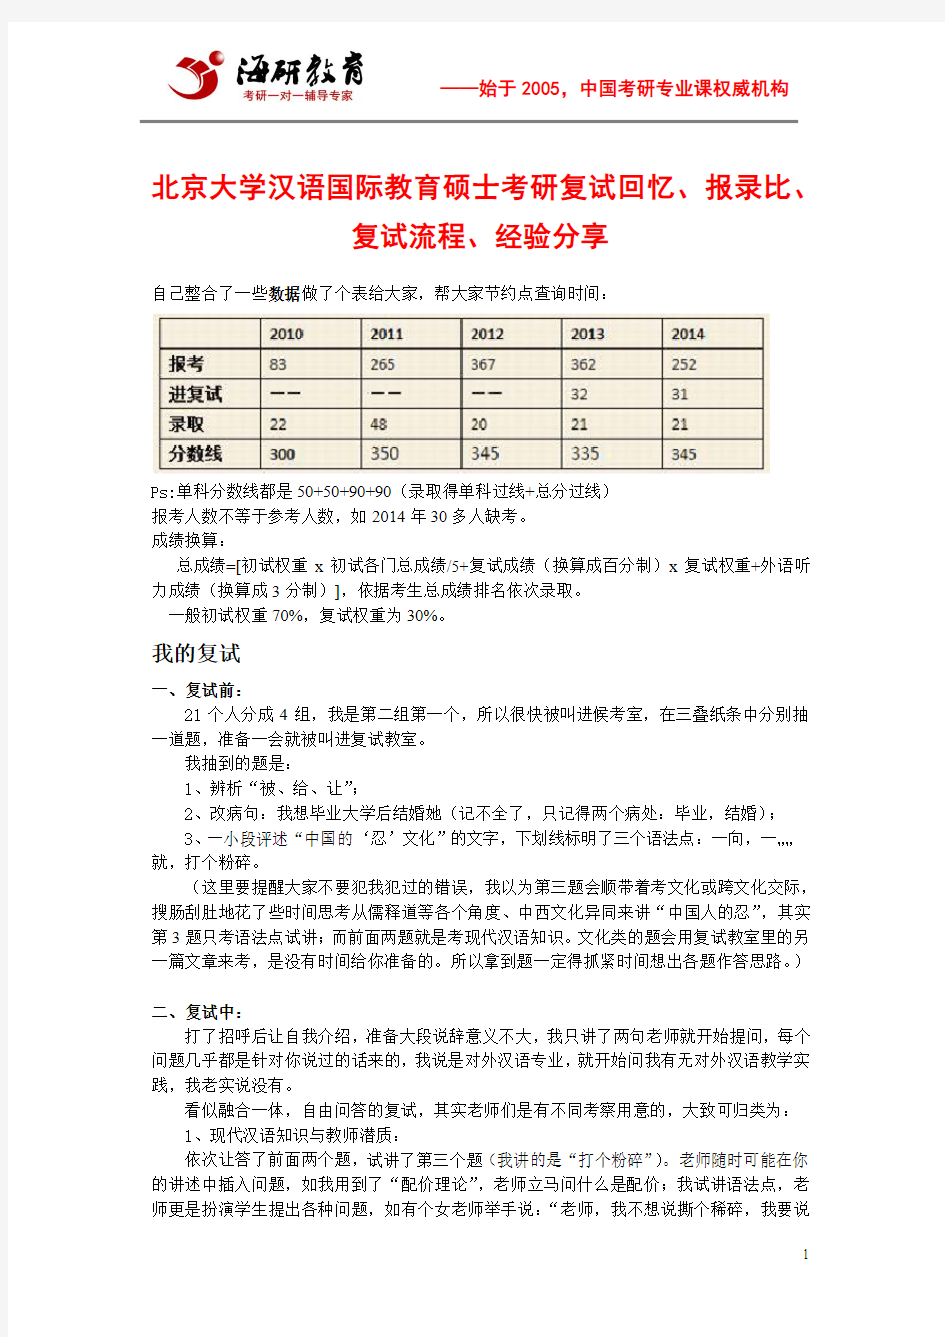 北京大学汉语国际教育硕士考研复试回忆、报录比、复试流程、经验分享